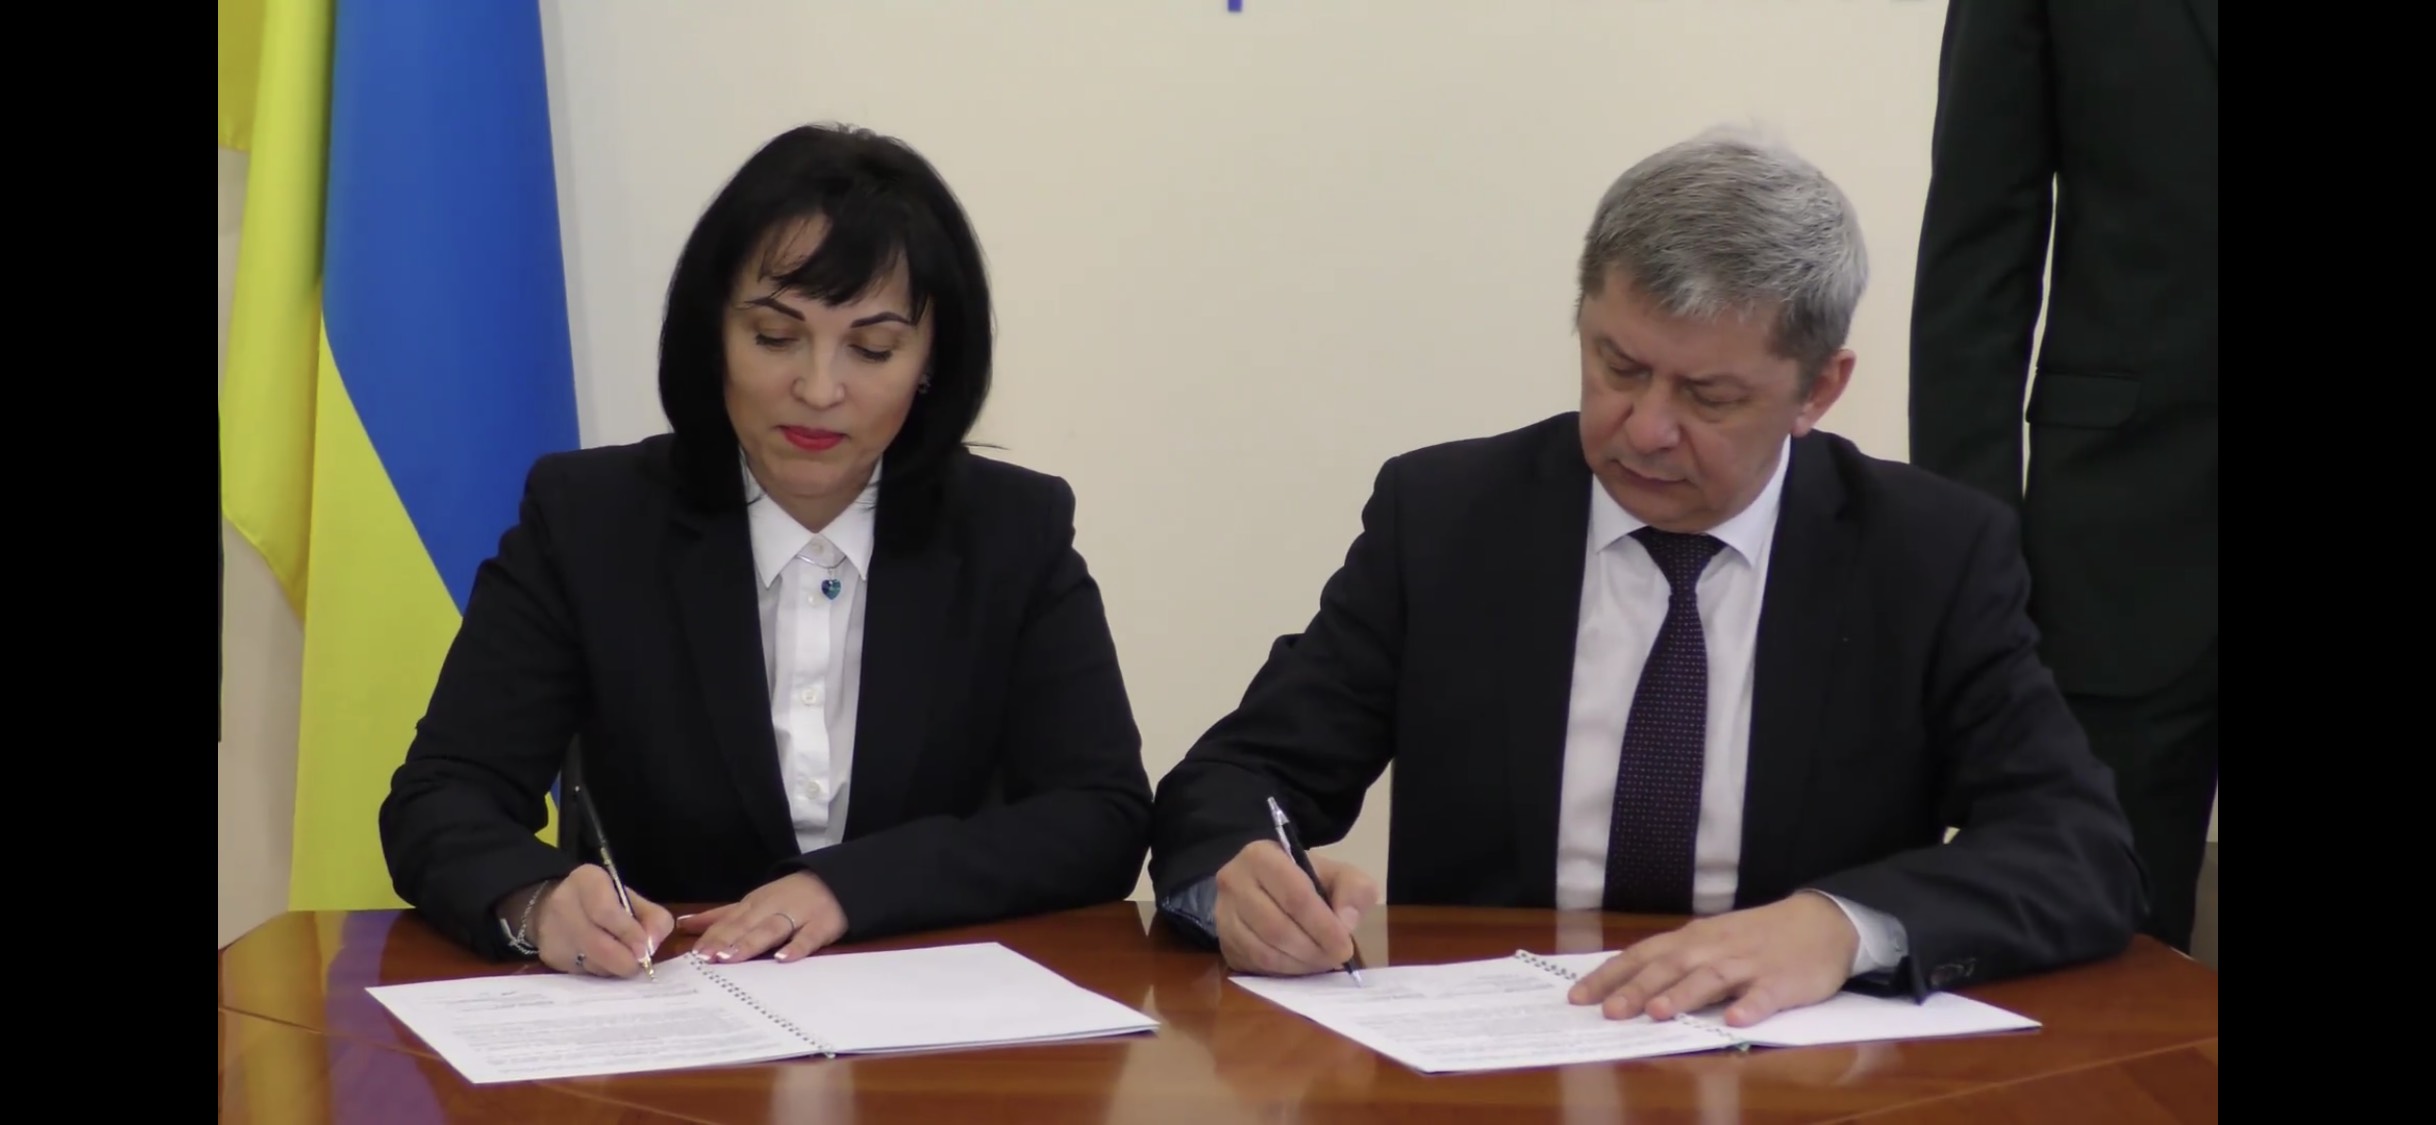 Вінницький ННІ УДФСУ розпочав співпрацю із ГУ ДПС у Вінницькій області